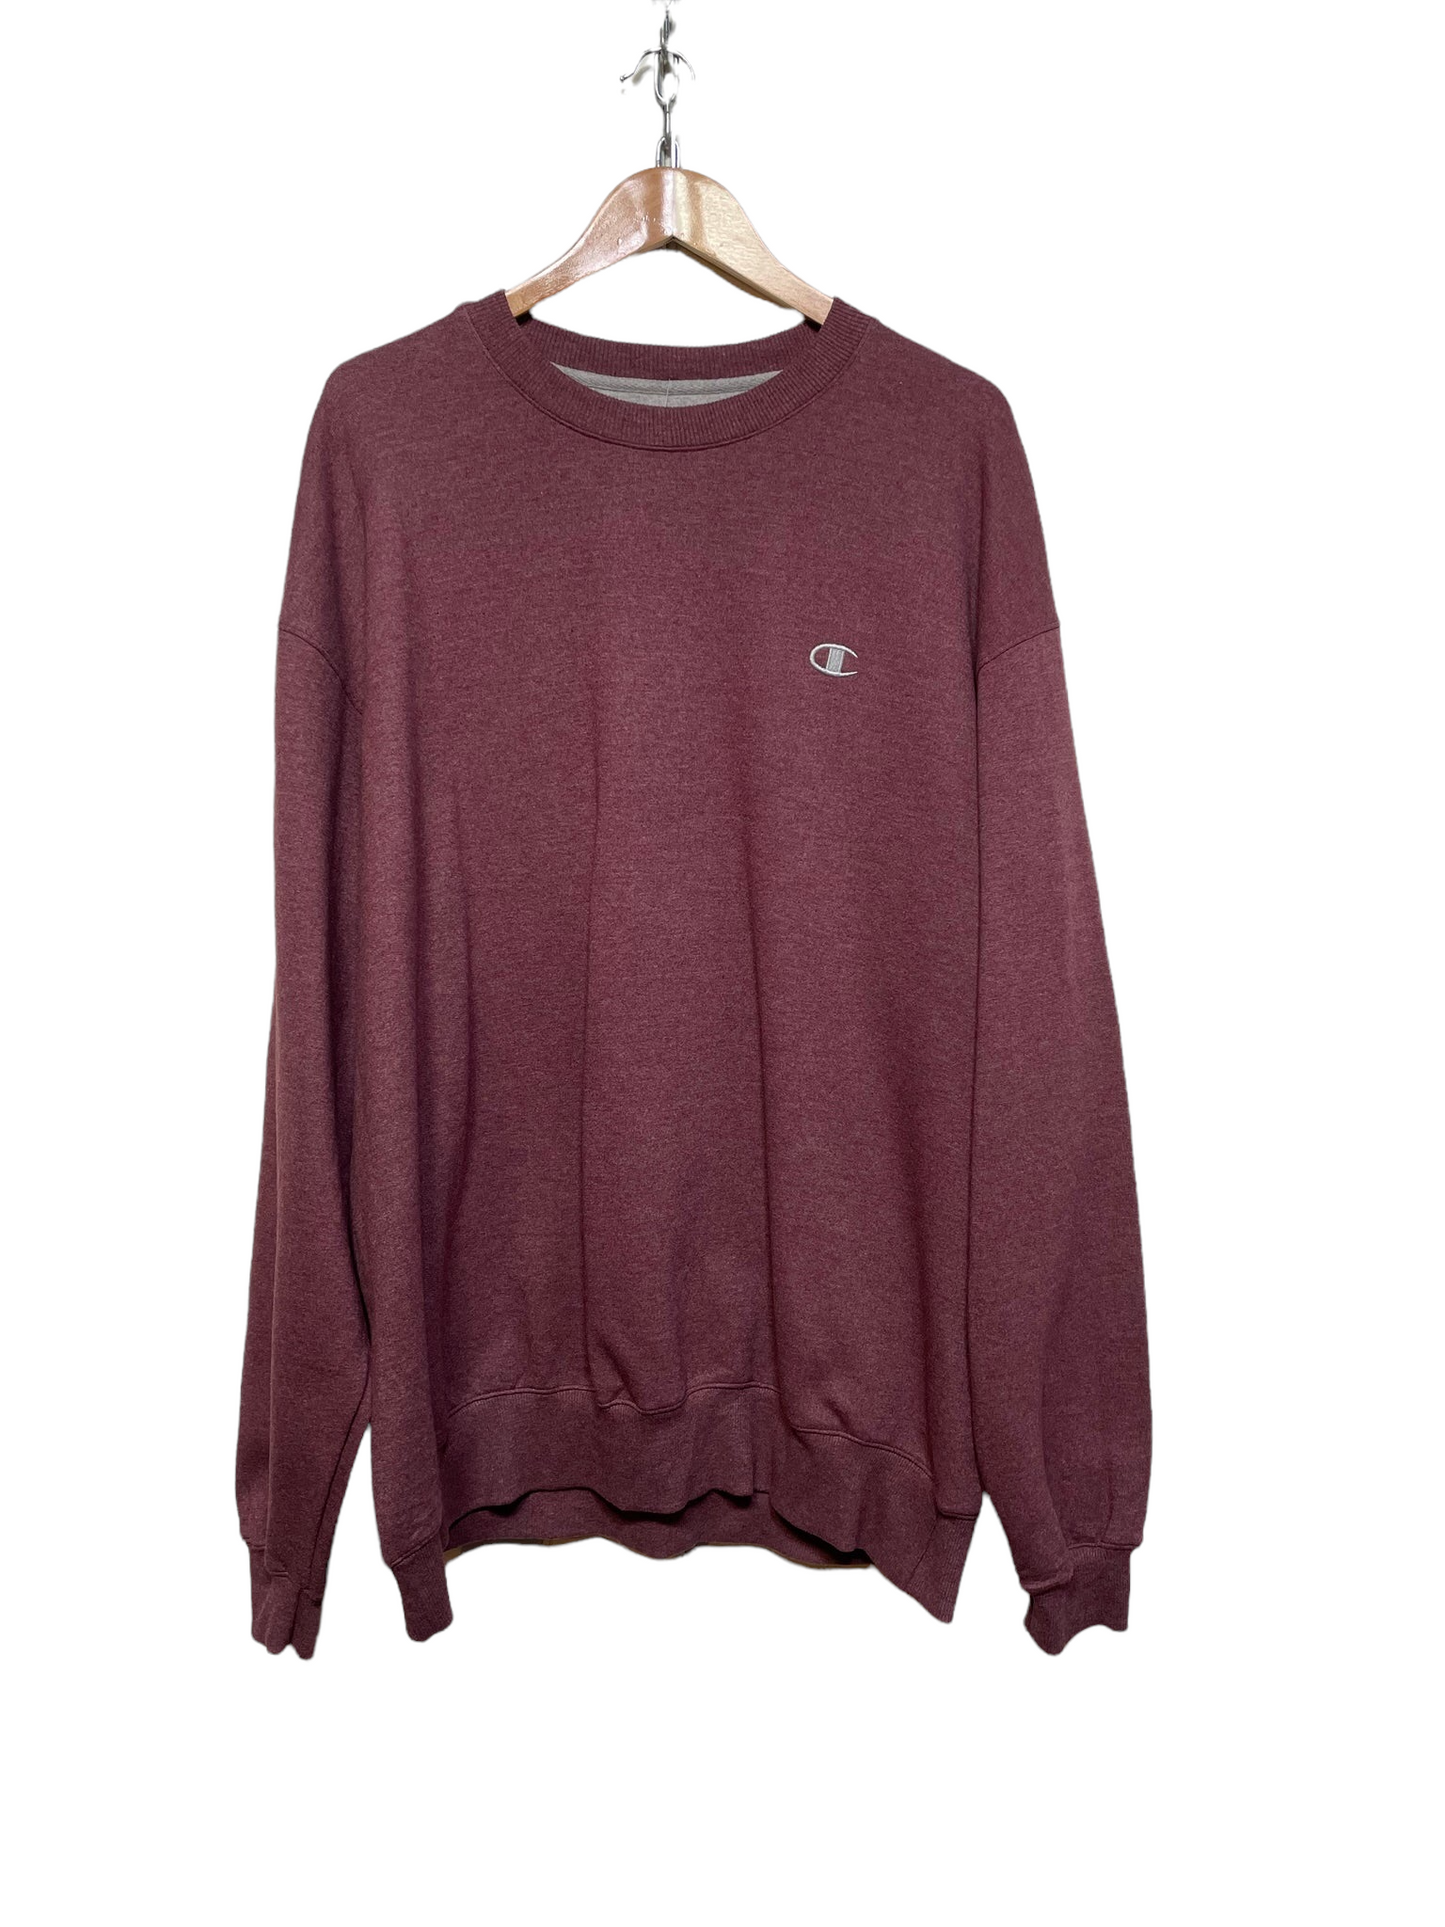 Champion Purple Sweatshirt (Size 2XL)